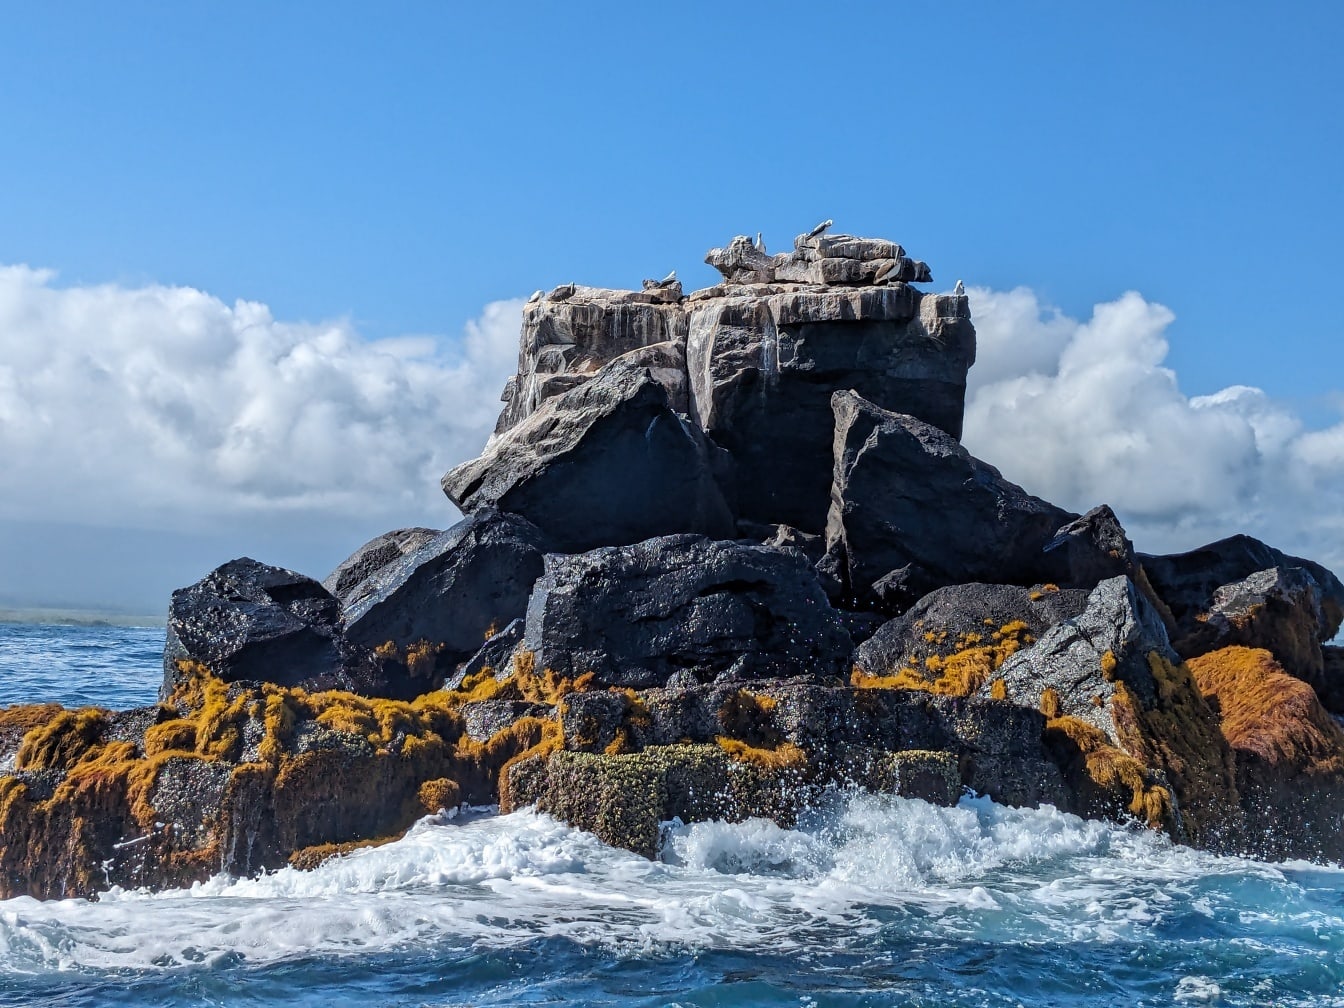 การก่อตัวของหินที่สาดโดยคลื่นของมหาสมุทรแปซิฟิกในอุทยานธรรมชาติบนเกาะกาลาปากอส